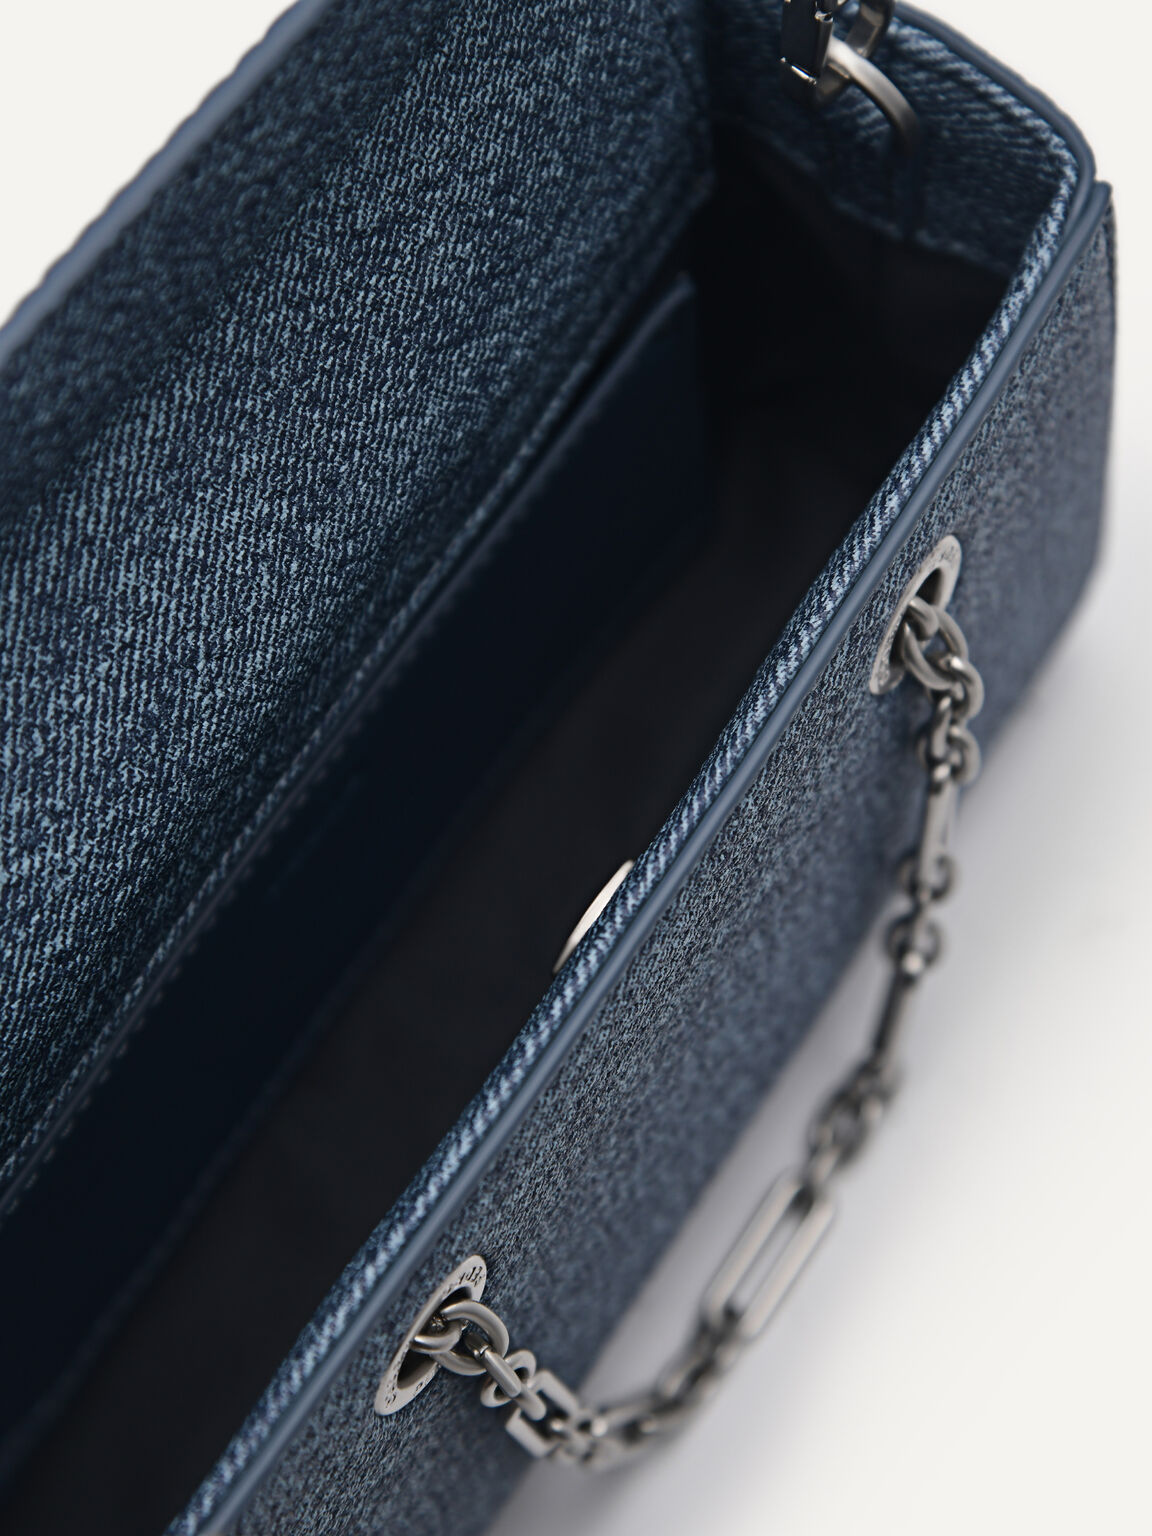 Chain Handle Handbag, Blue, hi-res